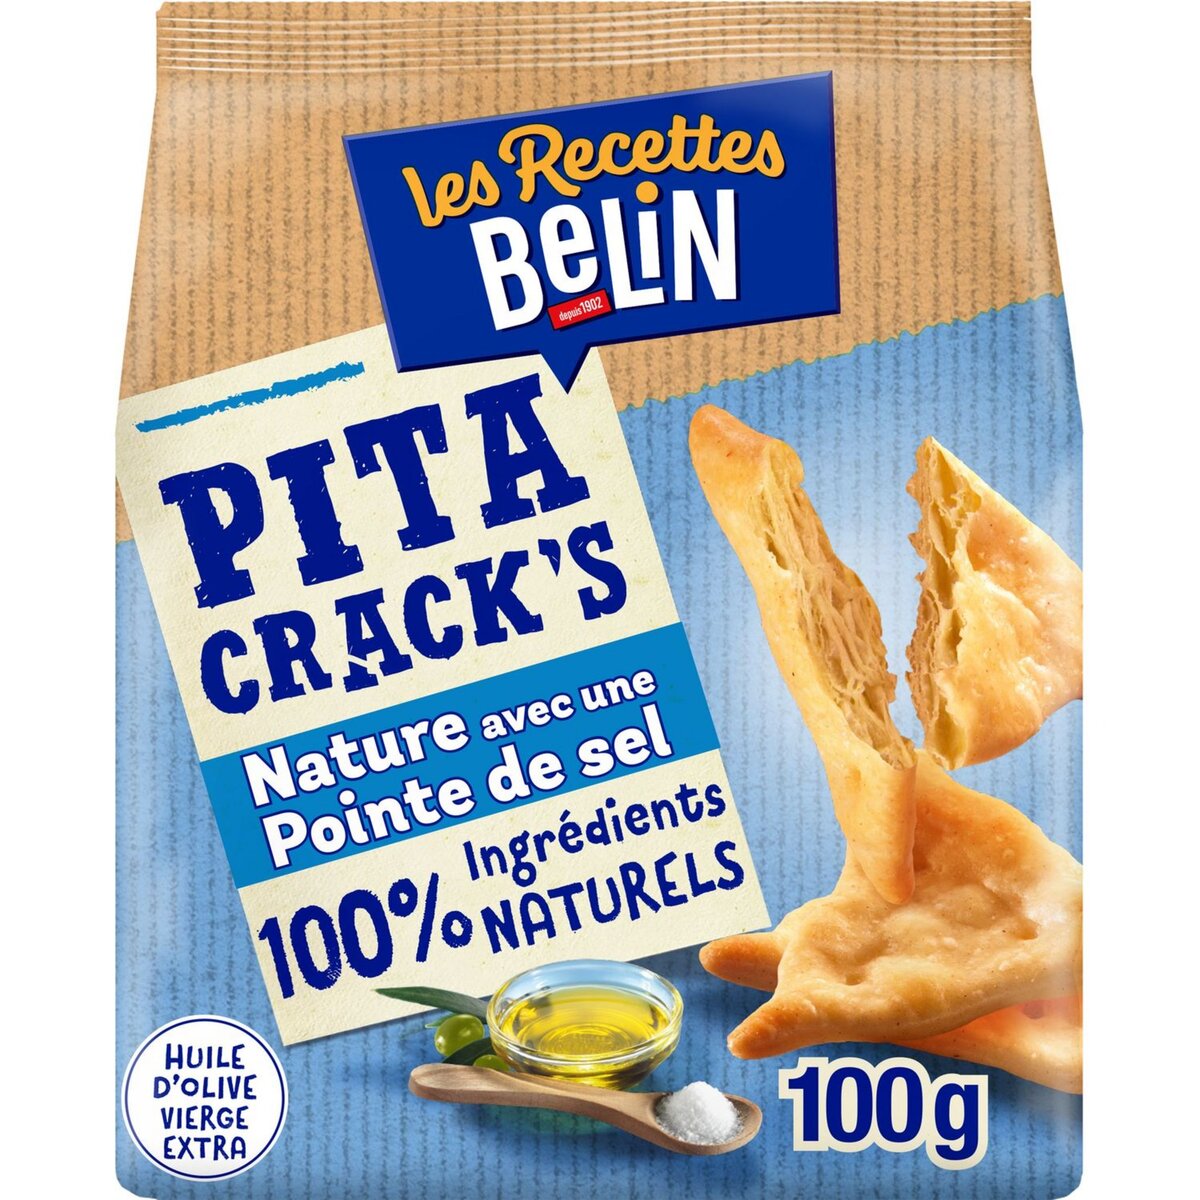 BELIN Pita crack's crackers nature avec une pointe de sel 100g